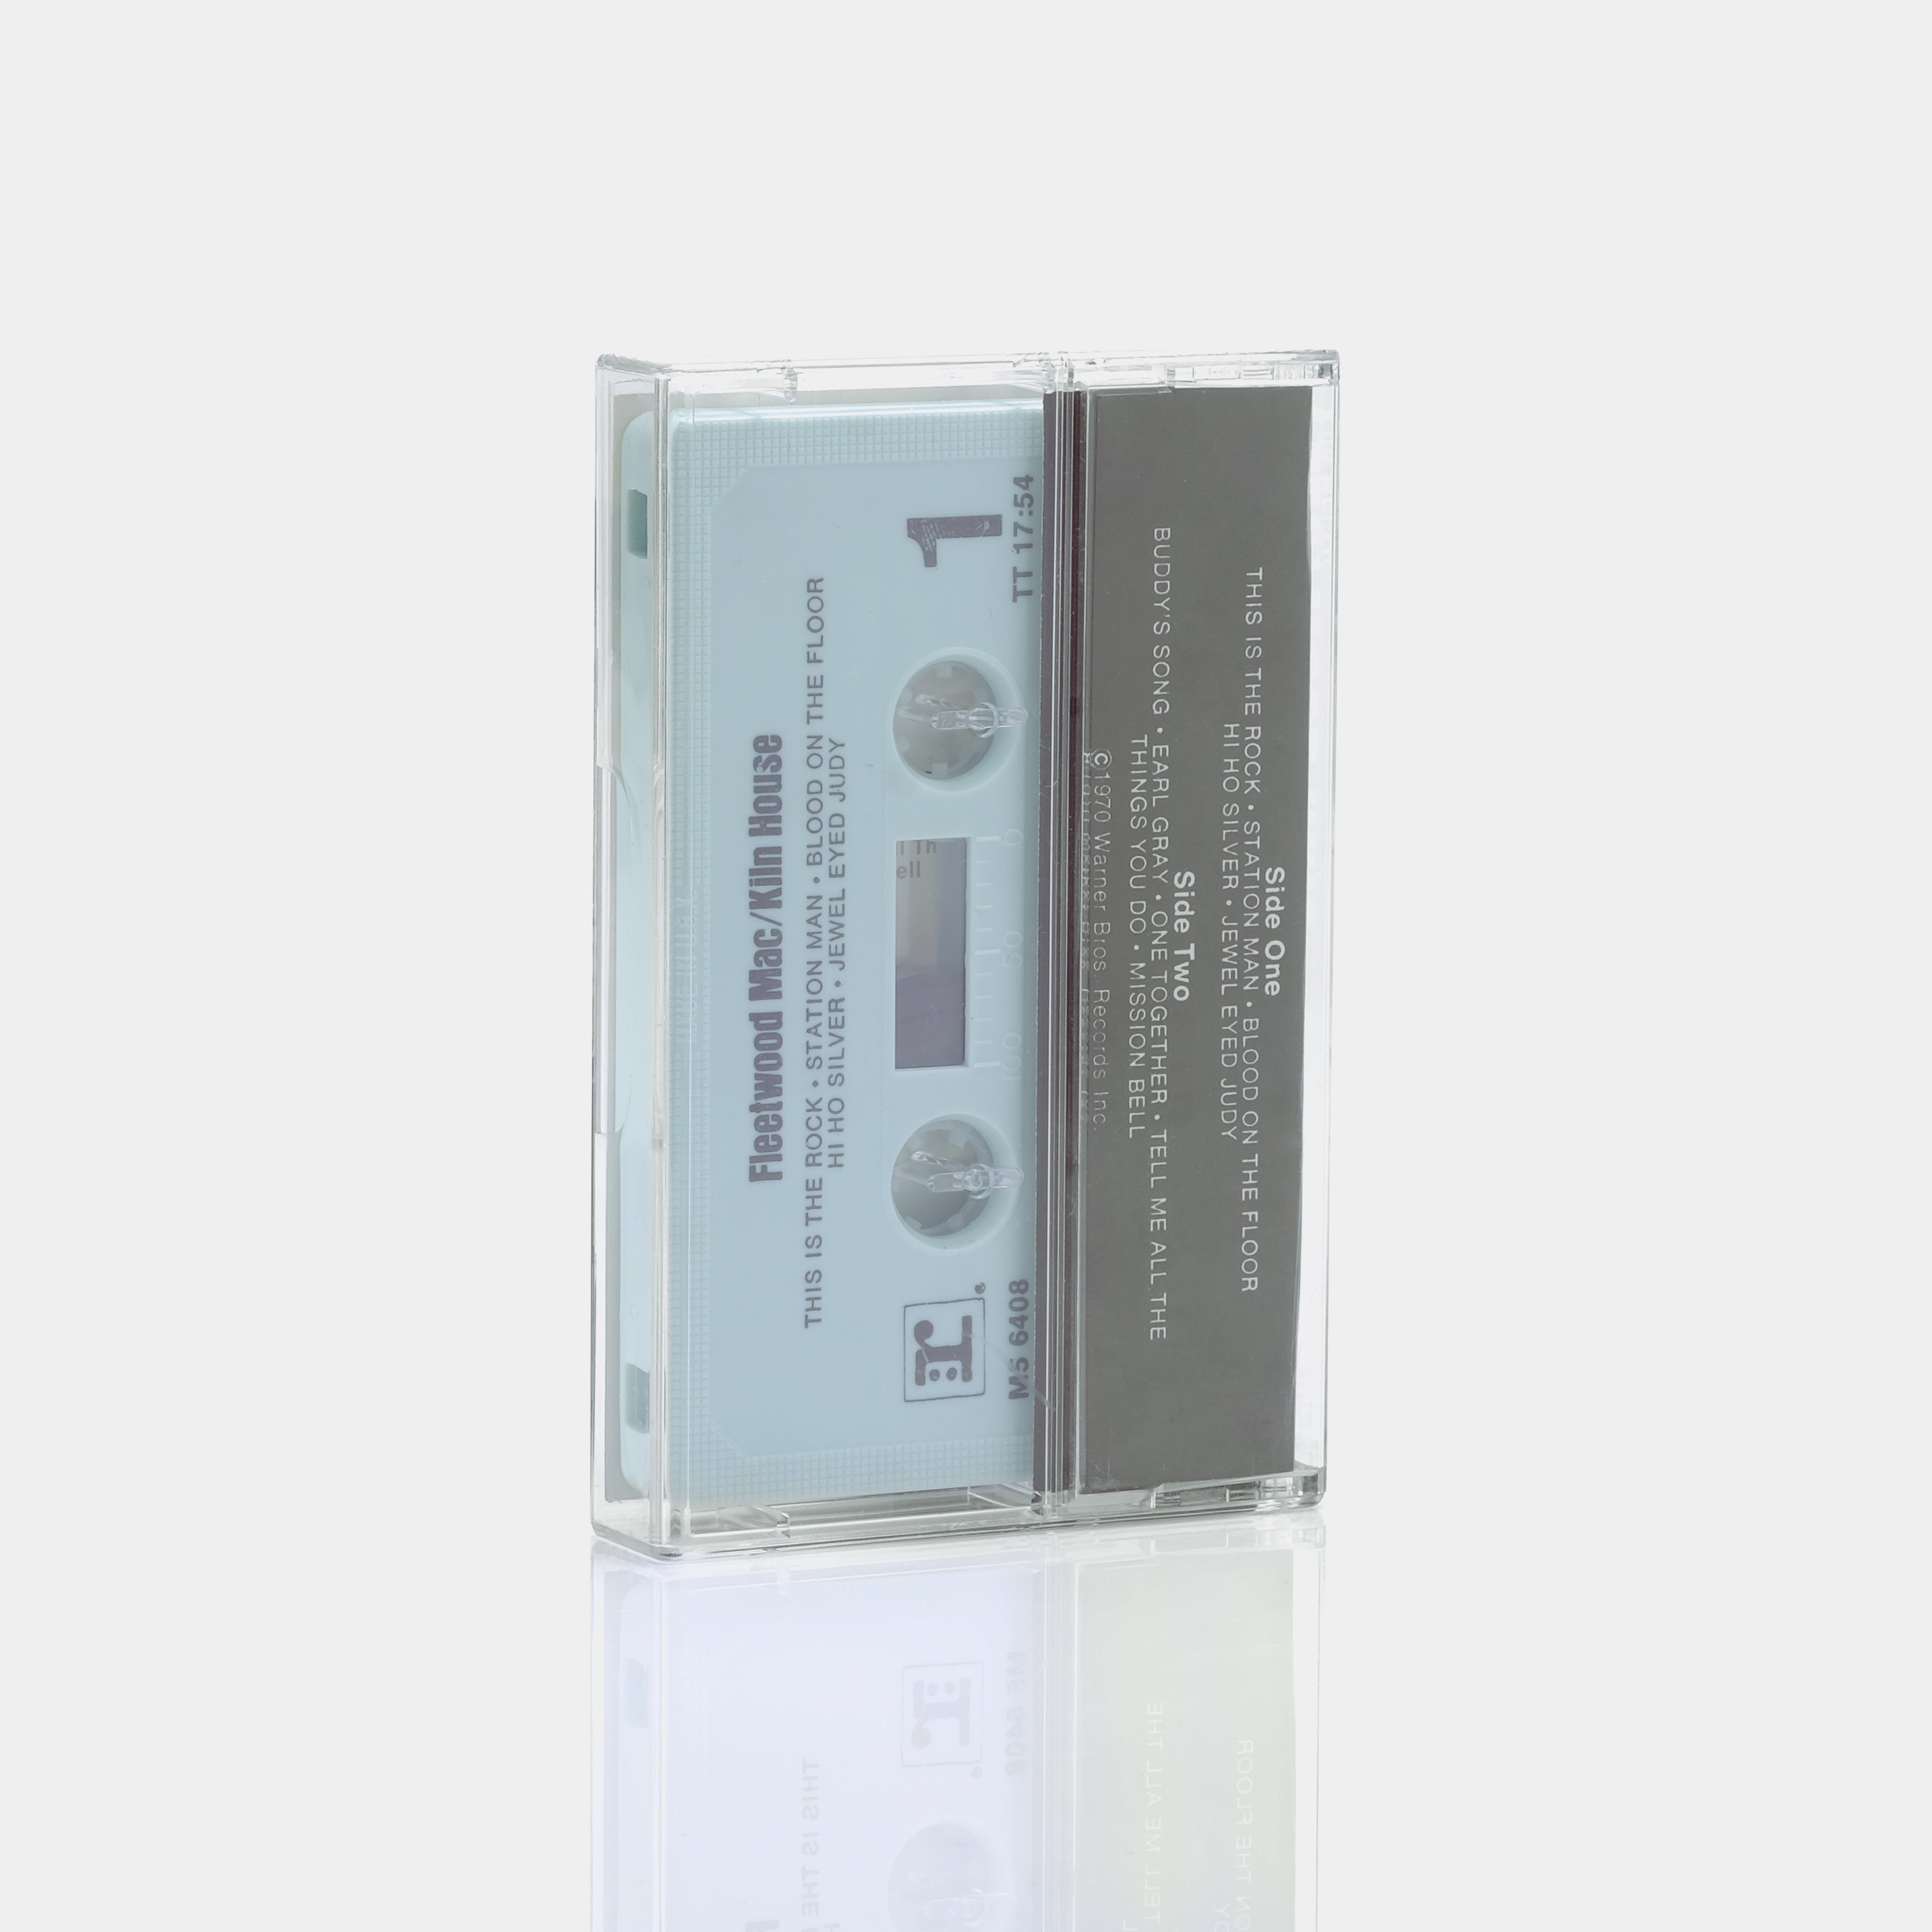 Fleetwood Mac - Kiln House Cassette Tape